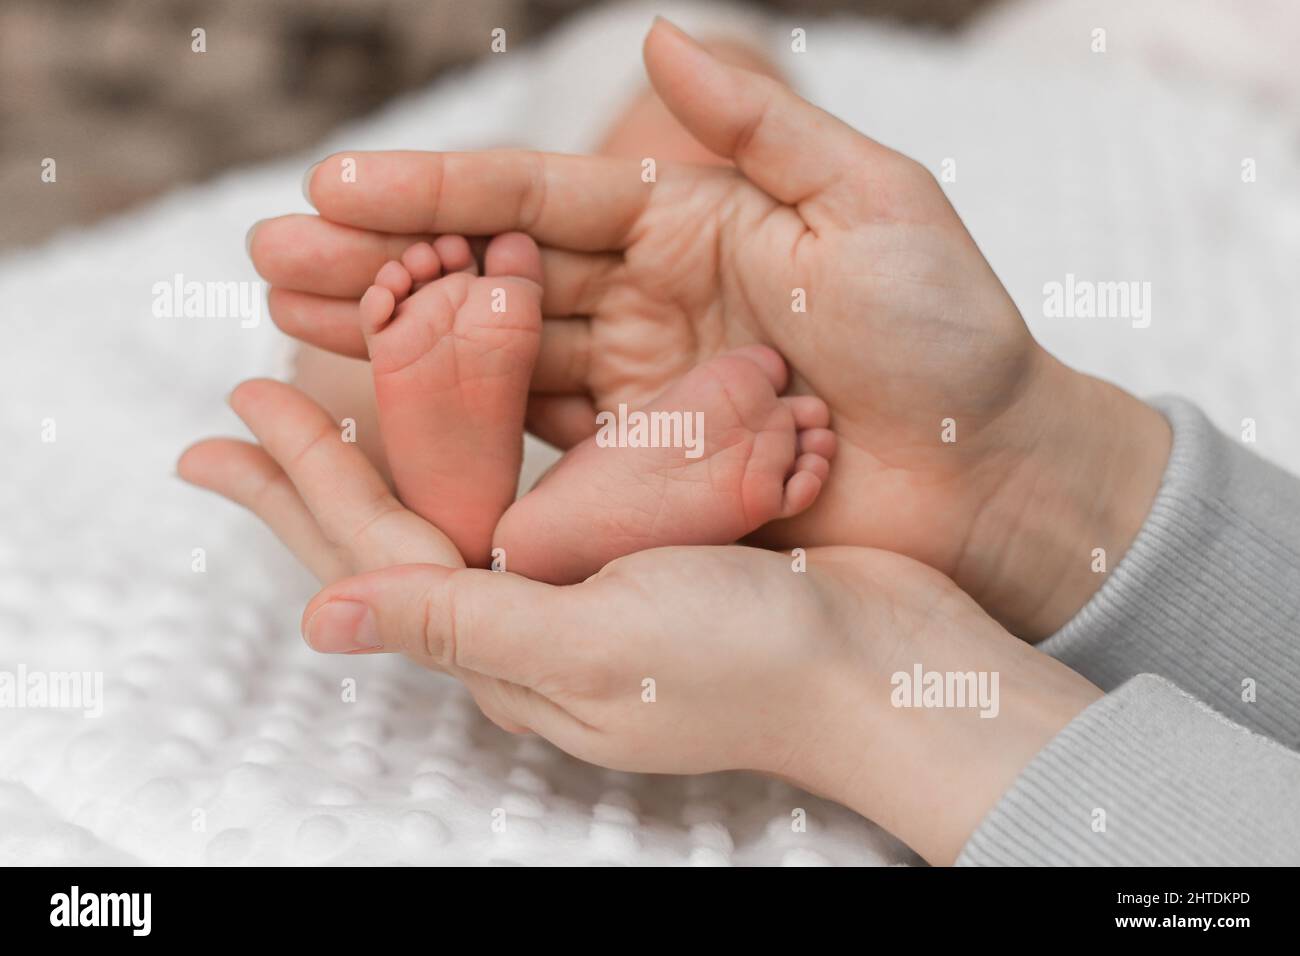 Las piernas del bebé están en manos de los padres. El concepto de una familia feliz. Foto de stock